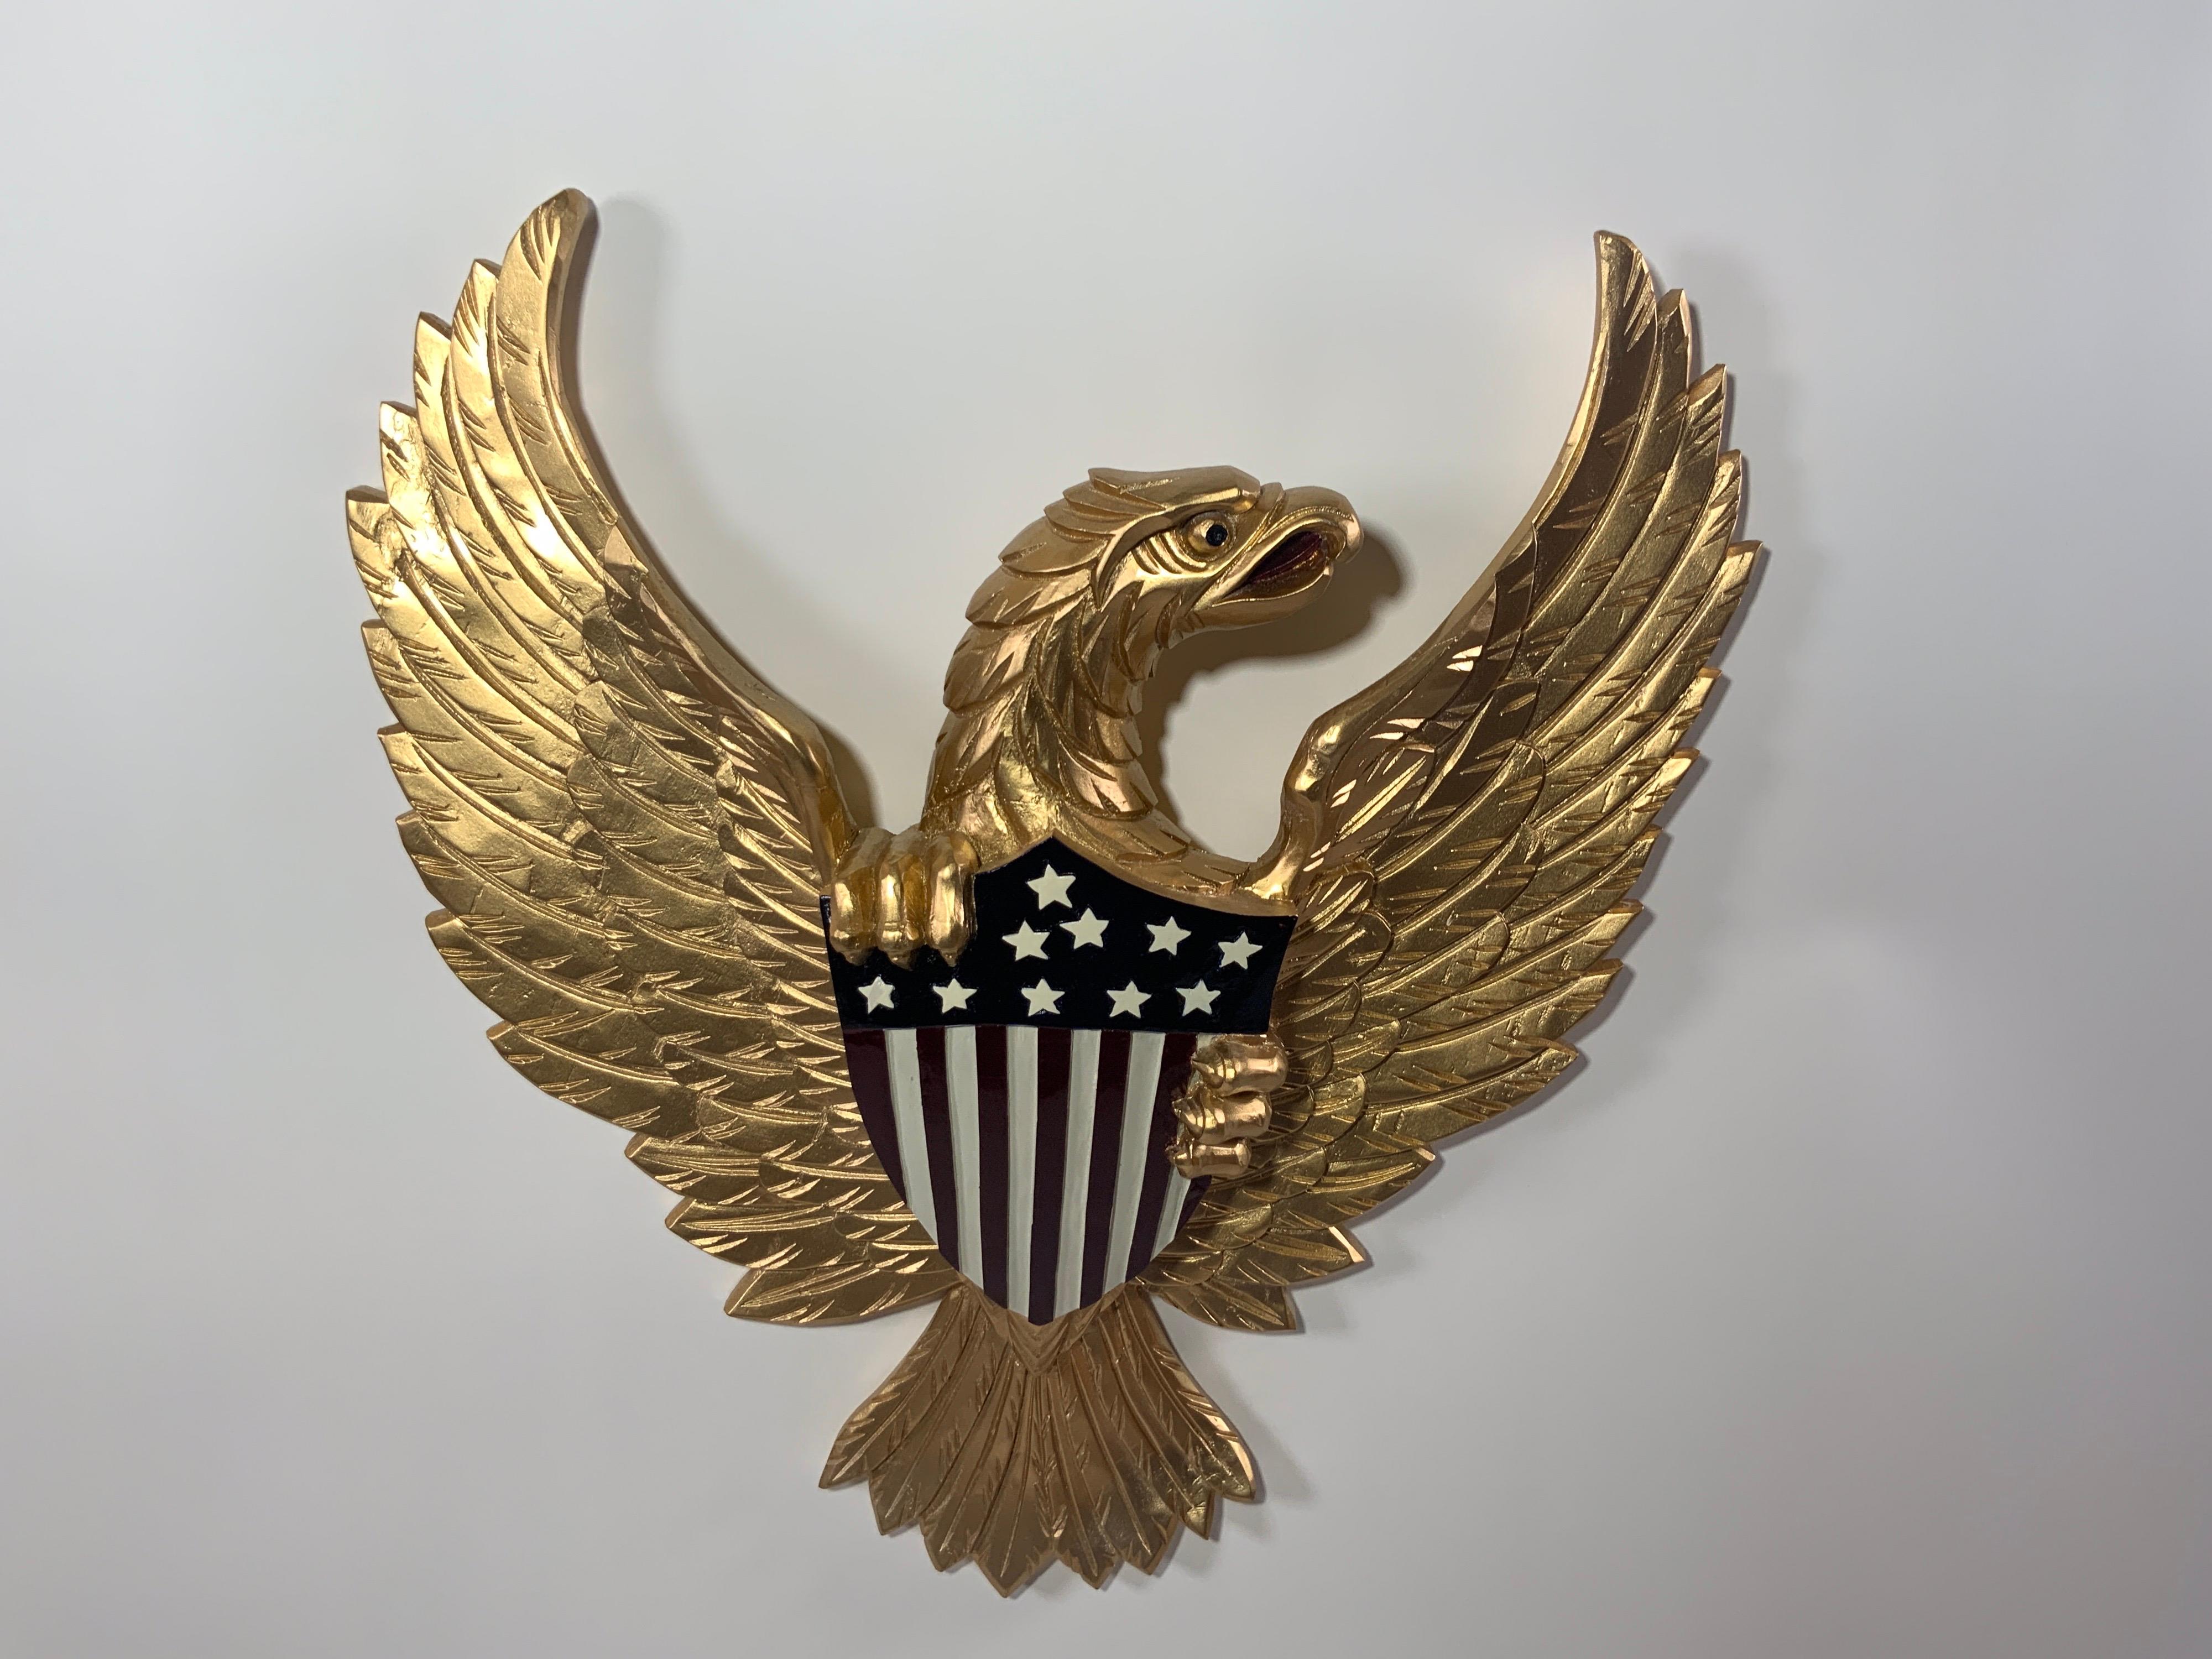 Geschnitzter Holzadler mit heller Goldbemalung. Der Adler ist sehr detailliert und umklammert das Große Siegel in Anlehnung an das US-Wappen. 

Gesamtabmessungen: 21